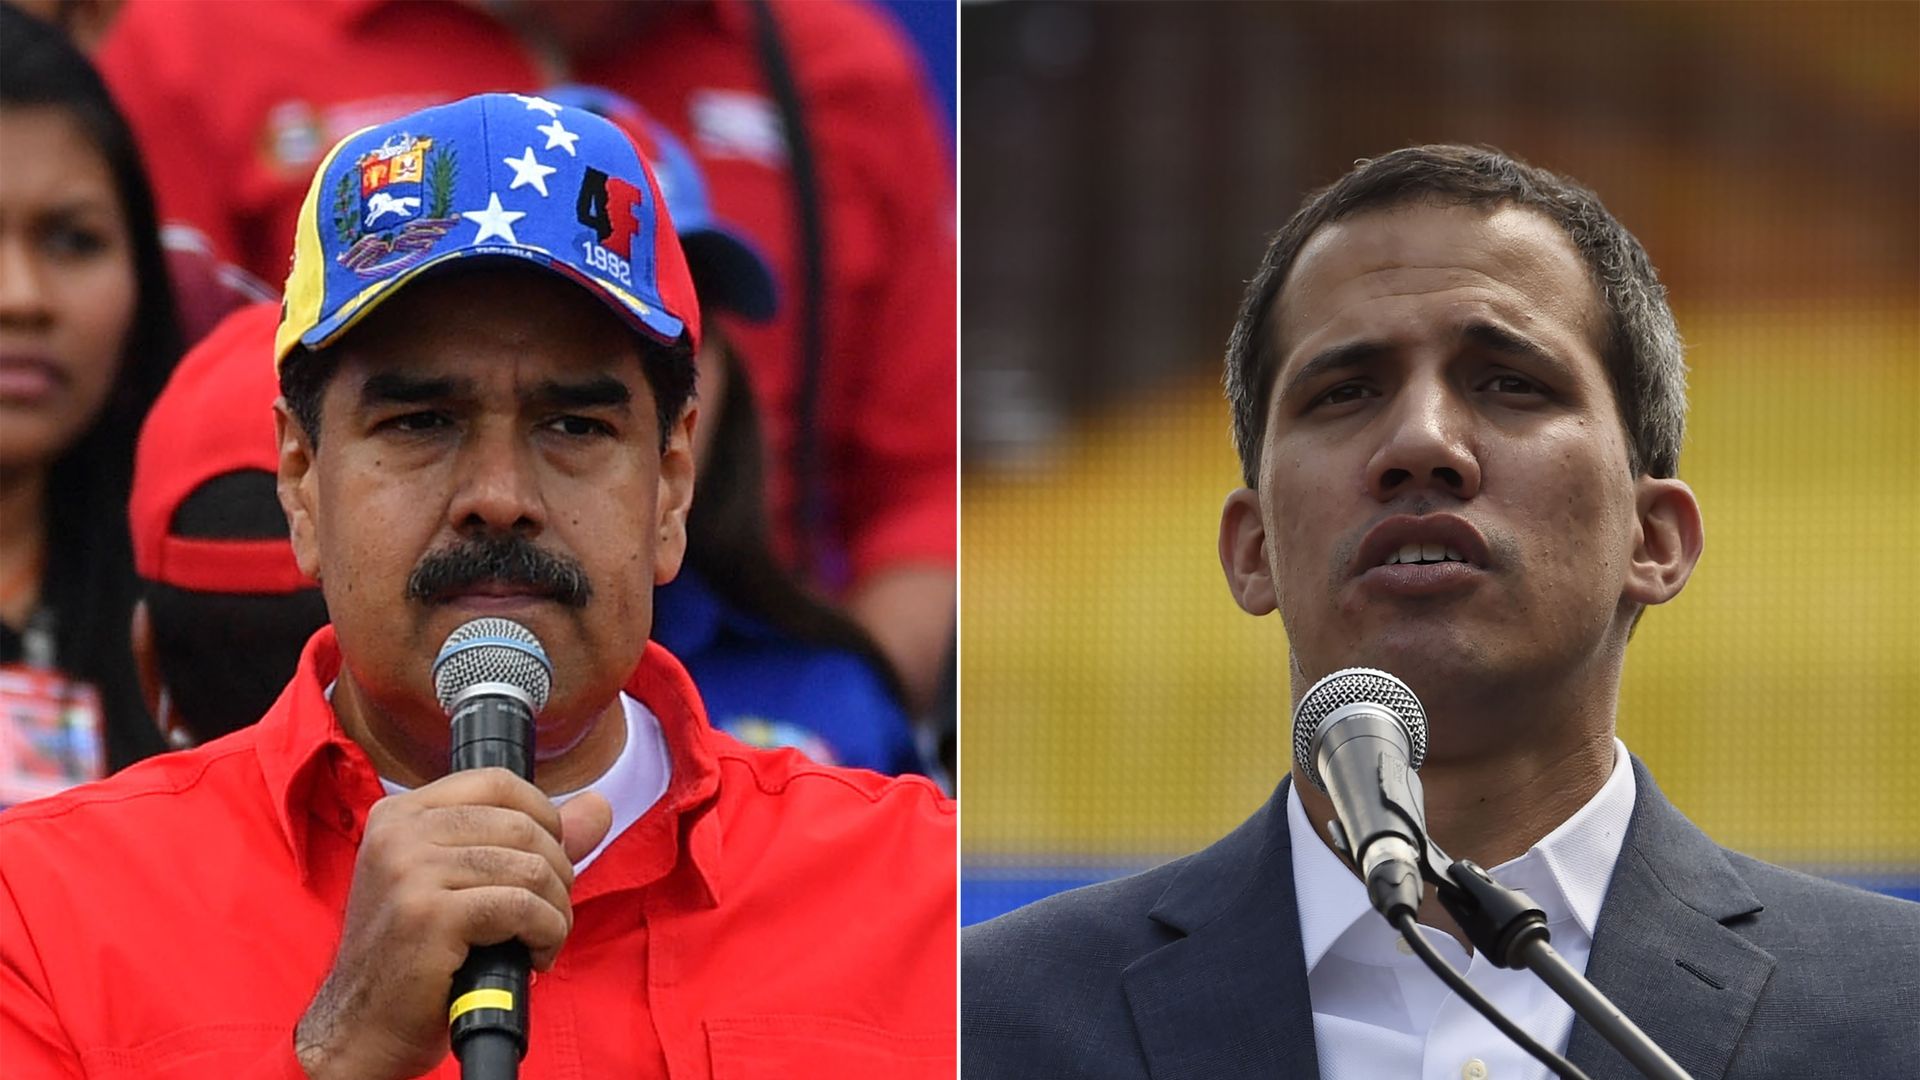 Maduro and Guiado